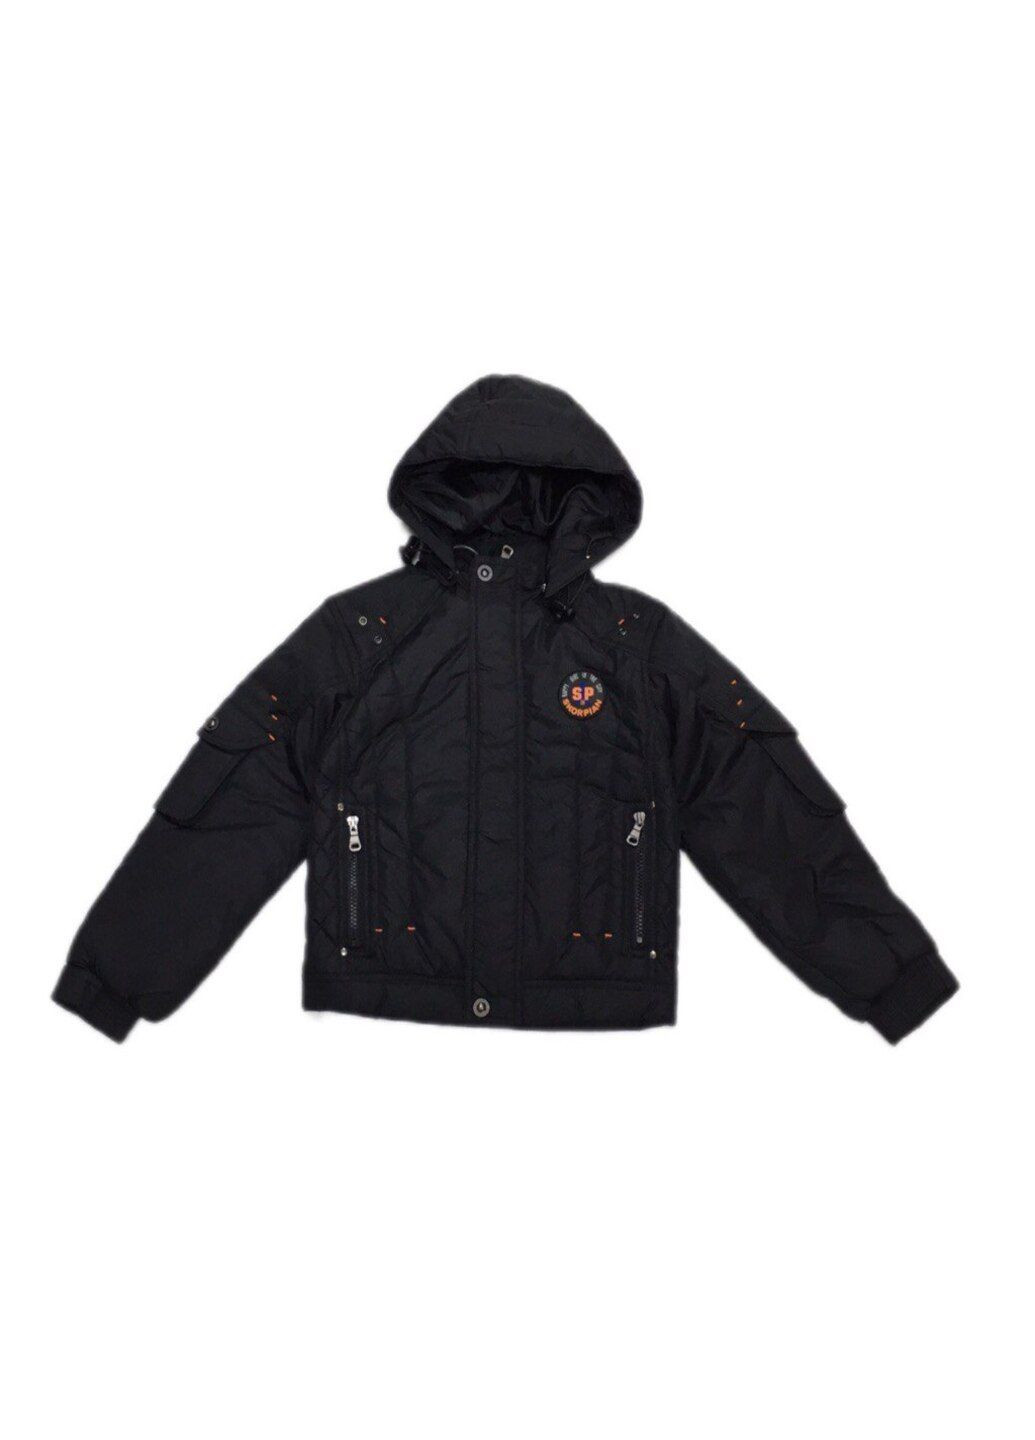 Черная демисезонная куртка демисезон для мальчика в черном цвете. Skorpian